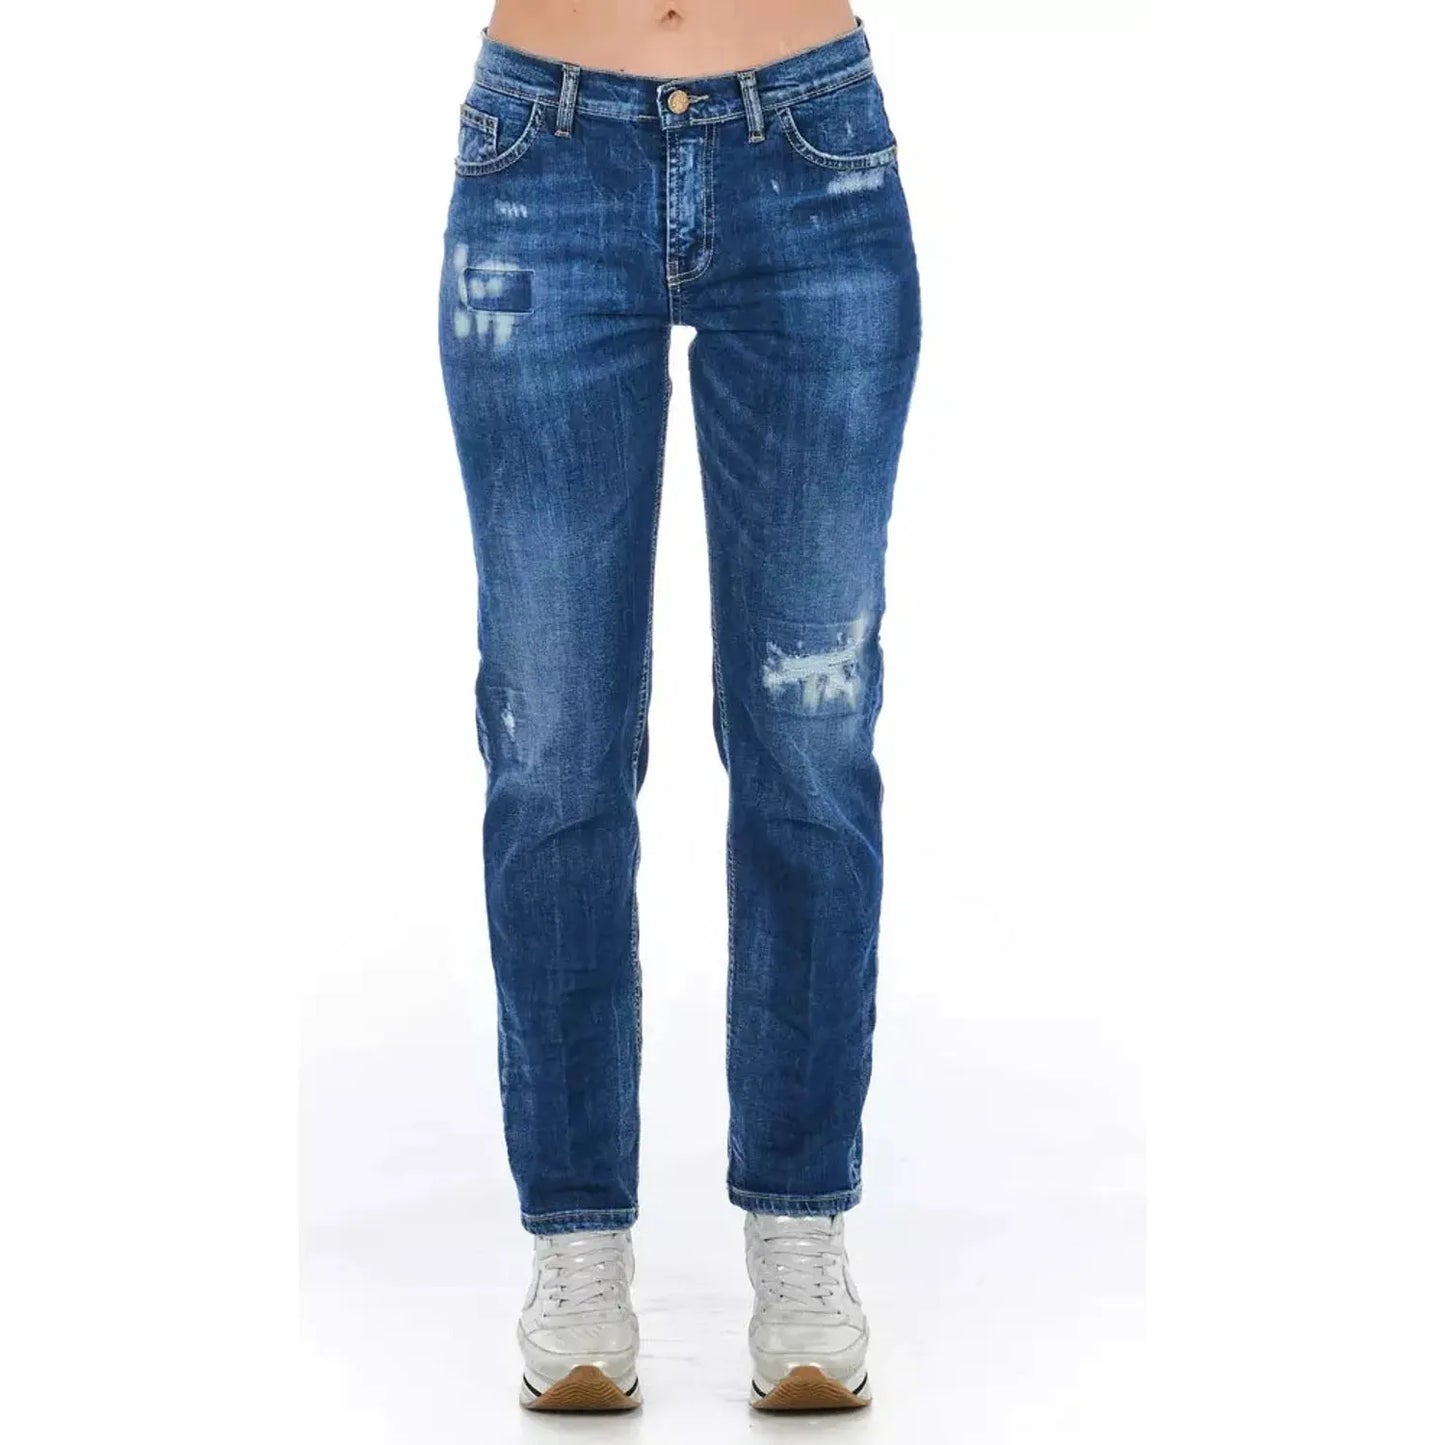 Frankie Morello Blue Cotton Blend Worn Wash Jeans blue-cotton-jeans-pant-51 product-21765-805859230-22-9c9224fd-baf.webp